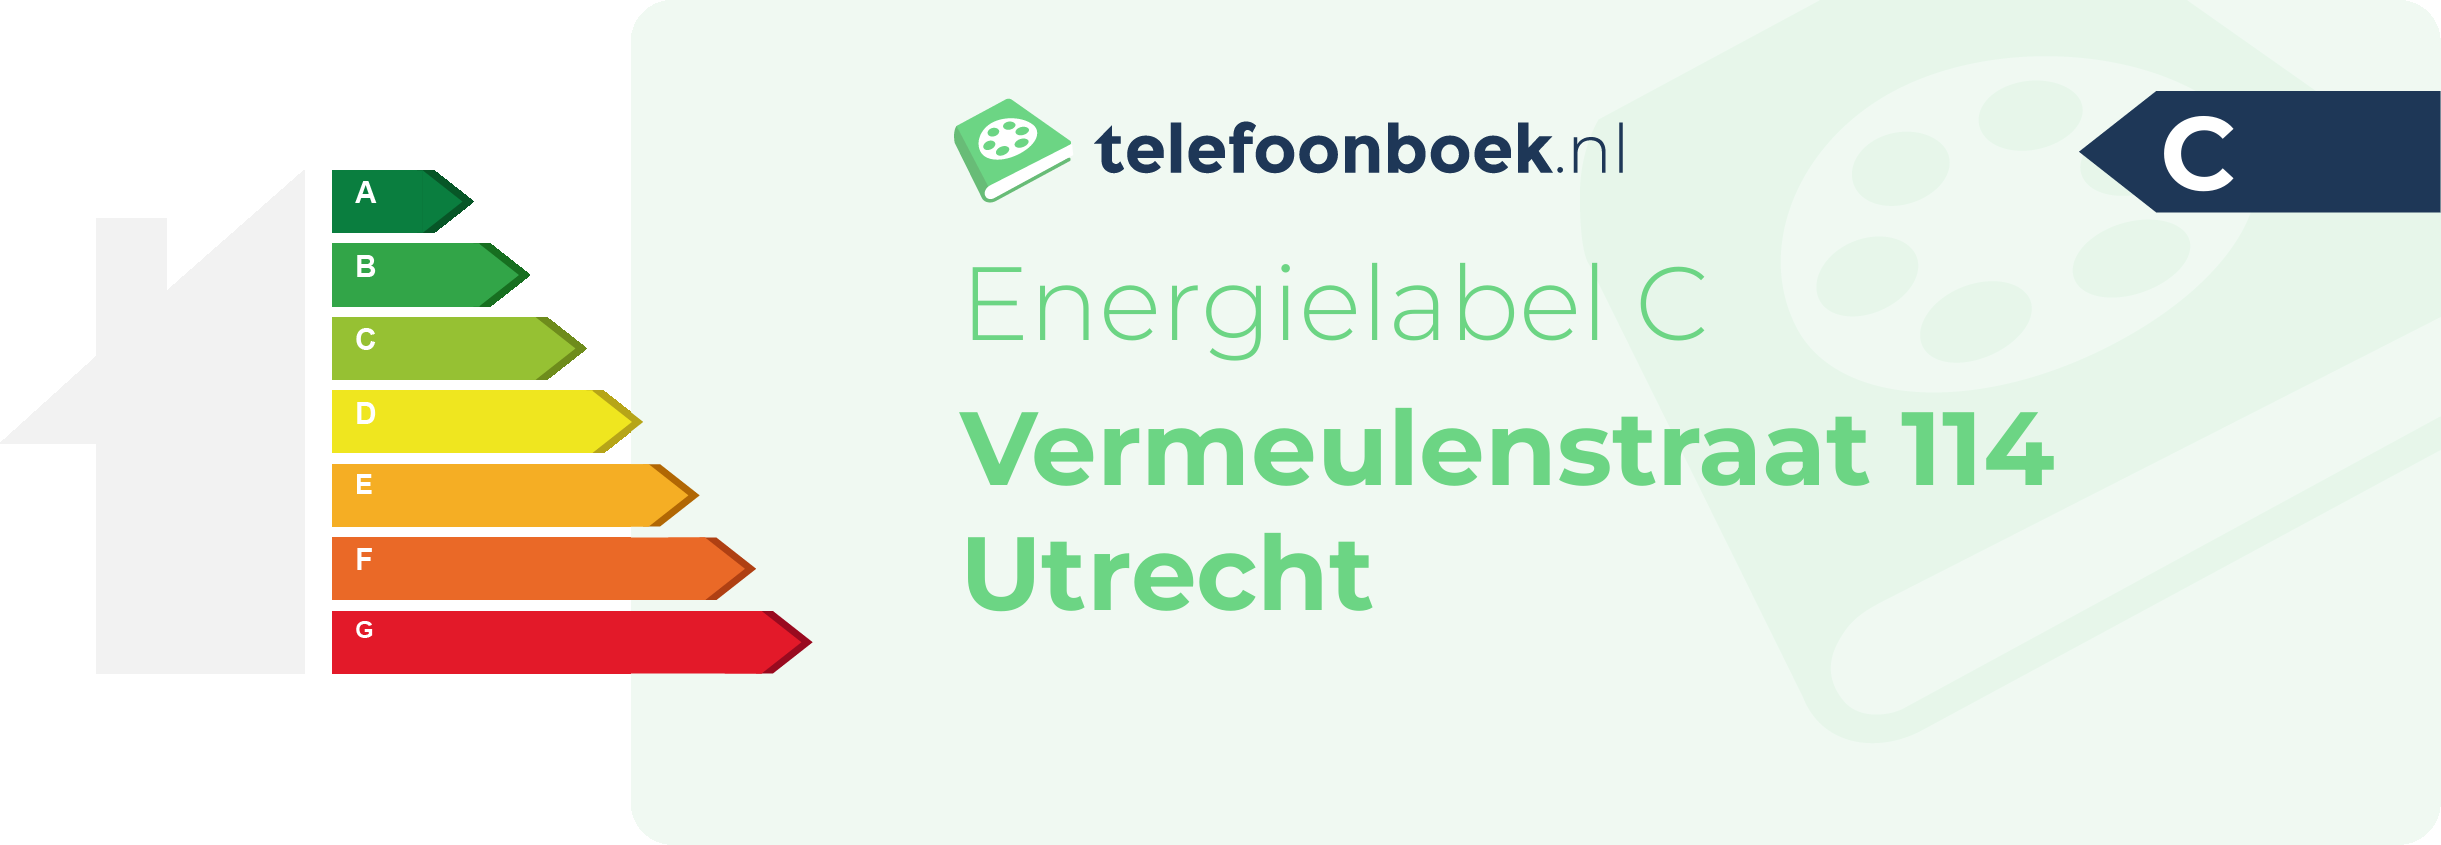 Energielabel Vermeulenstraat 114 Utrecht